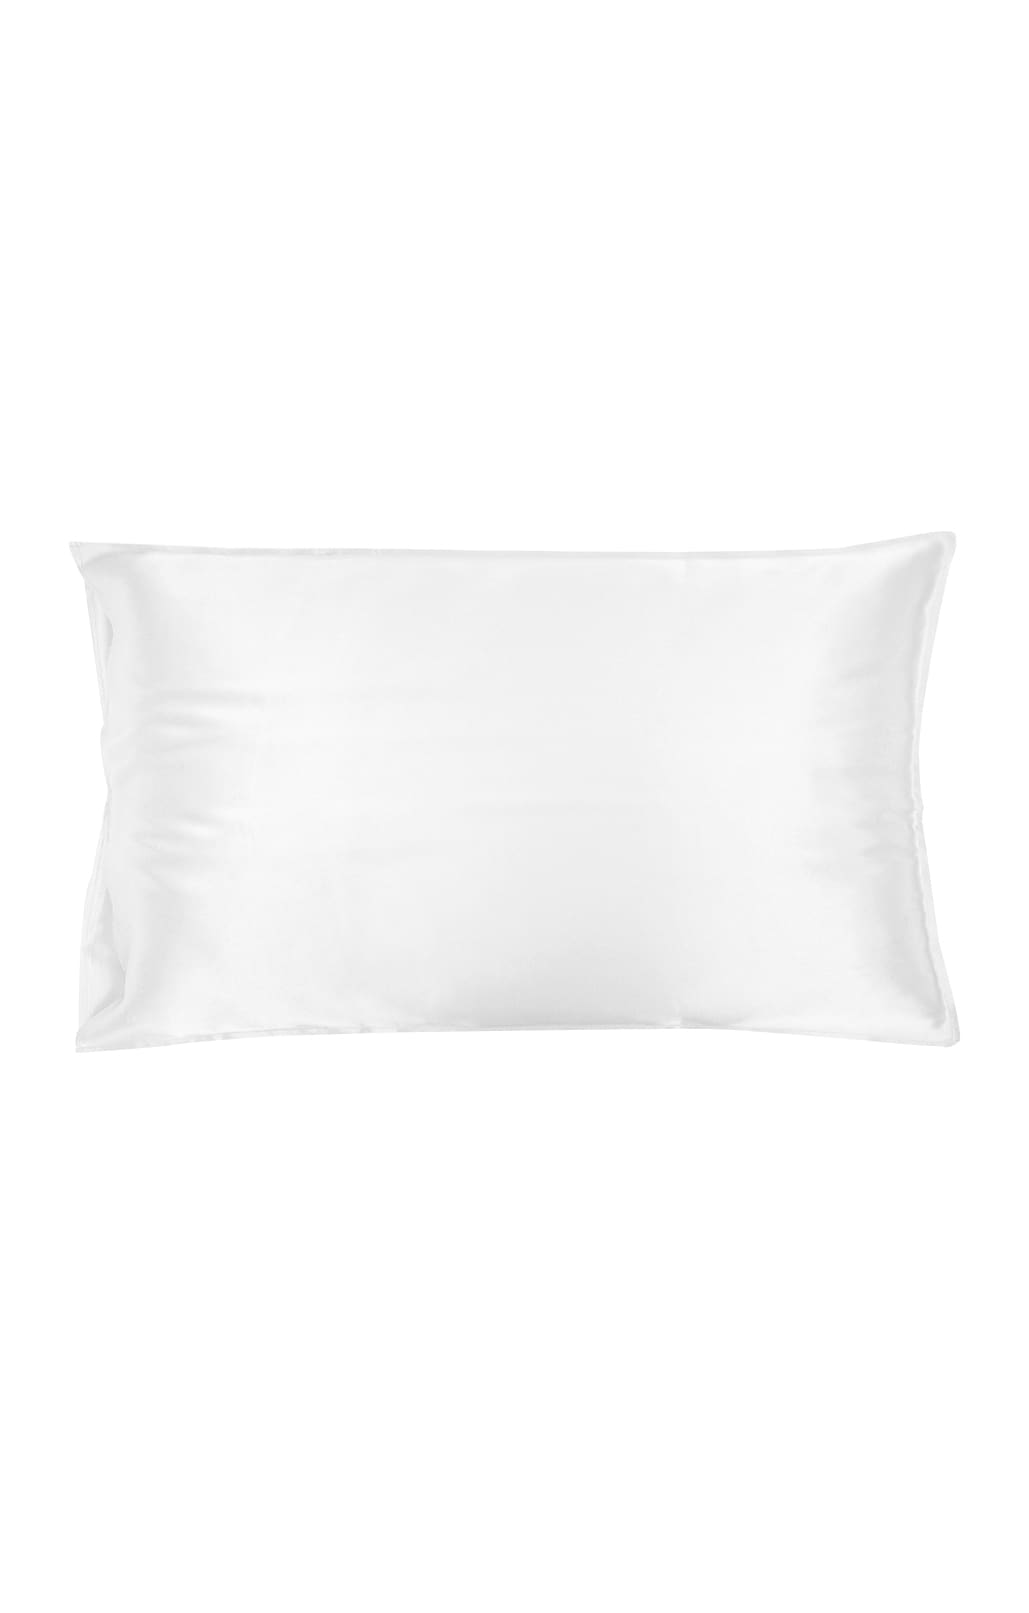 Silk pillowcase, king size, white